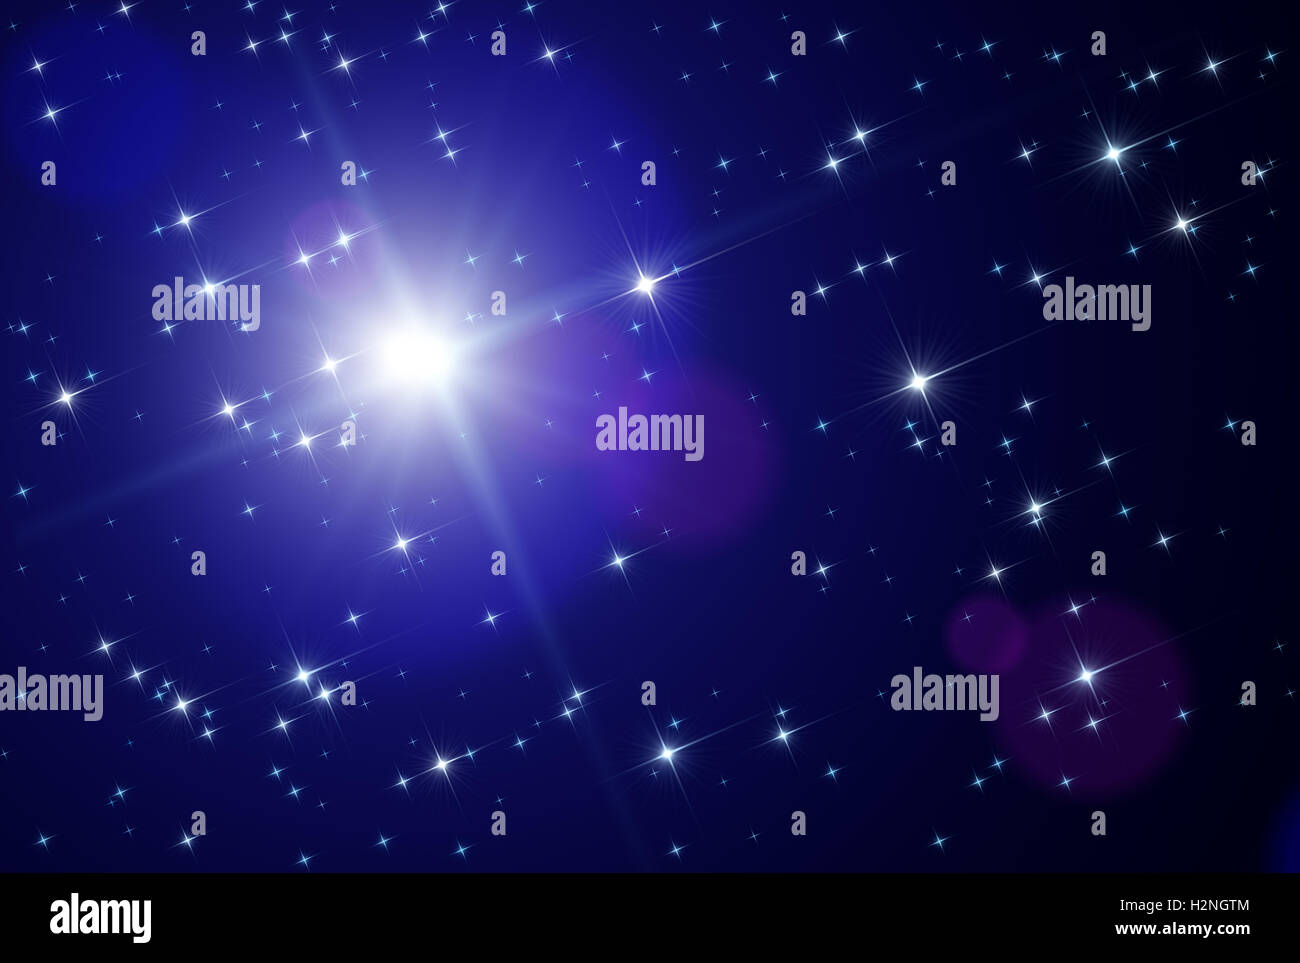 Illustrazione astratta che rappresenta lo sfondo con un modello di spazio affollato da scintillanti stelle scintillanti con una stella vicina Foto Stock